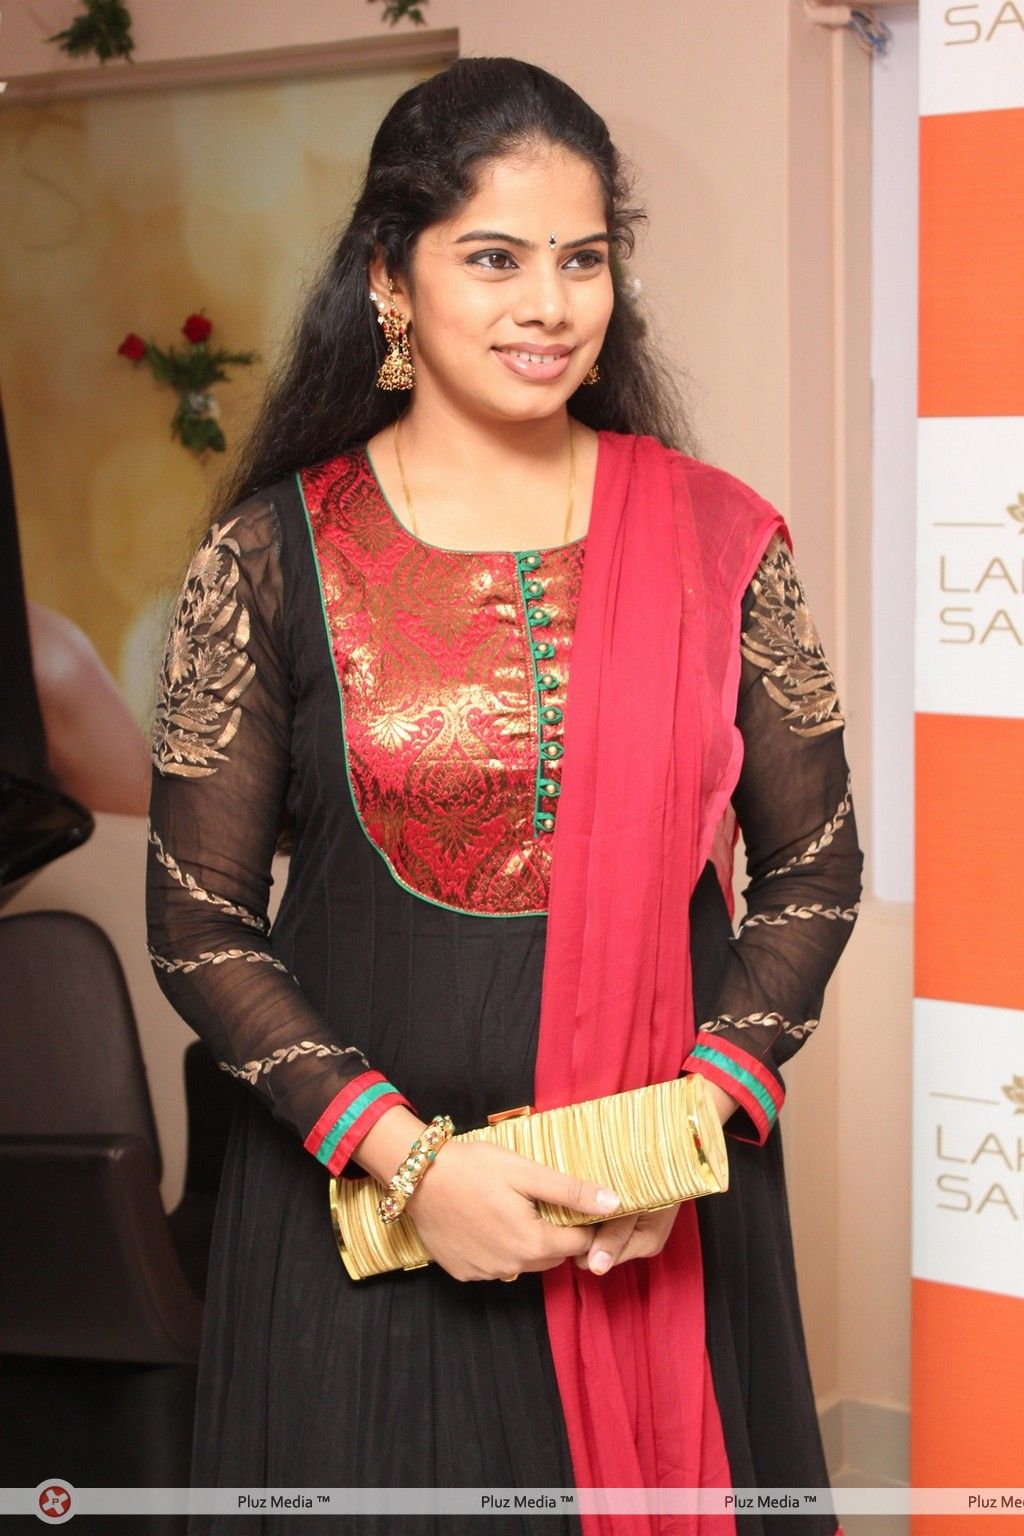 Deepa Venkat Launches LAKME Salon Stills | Picture 323966